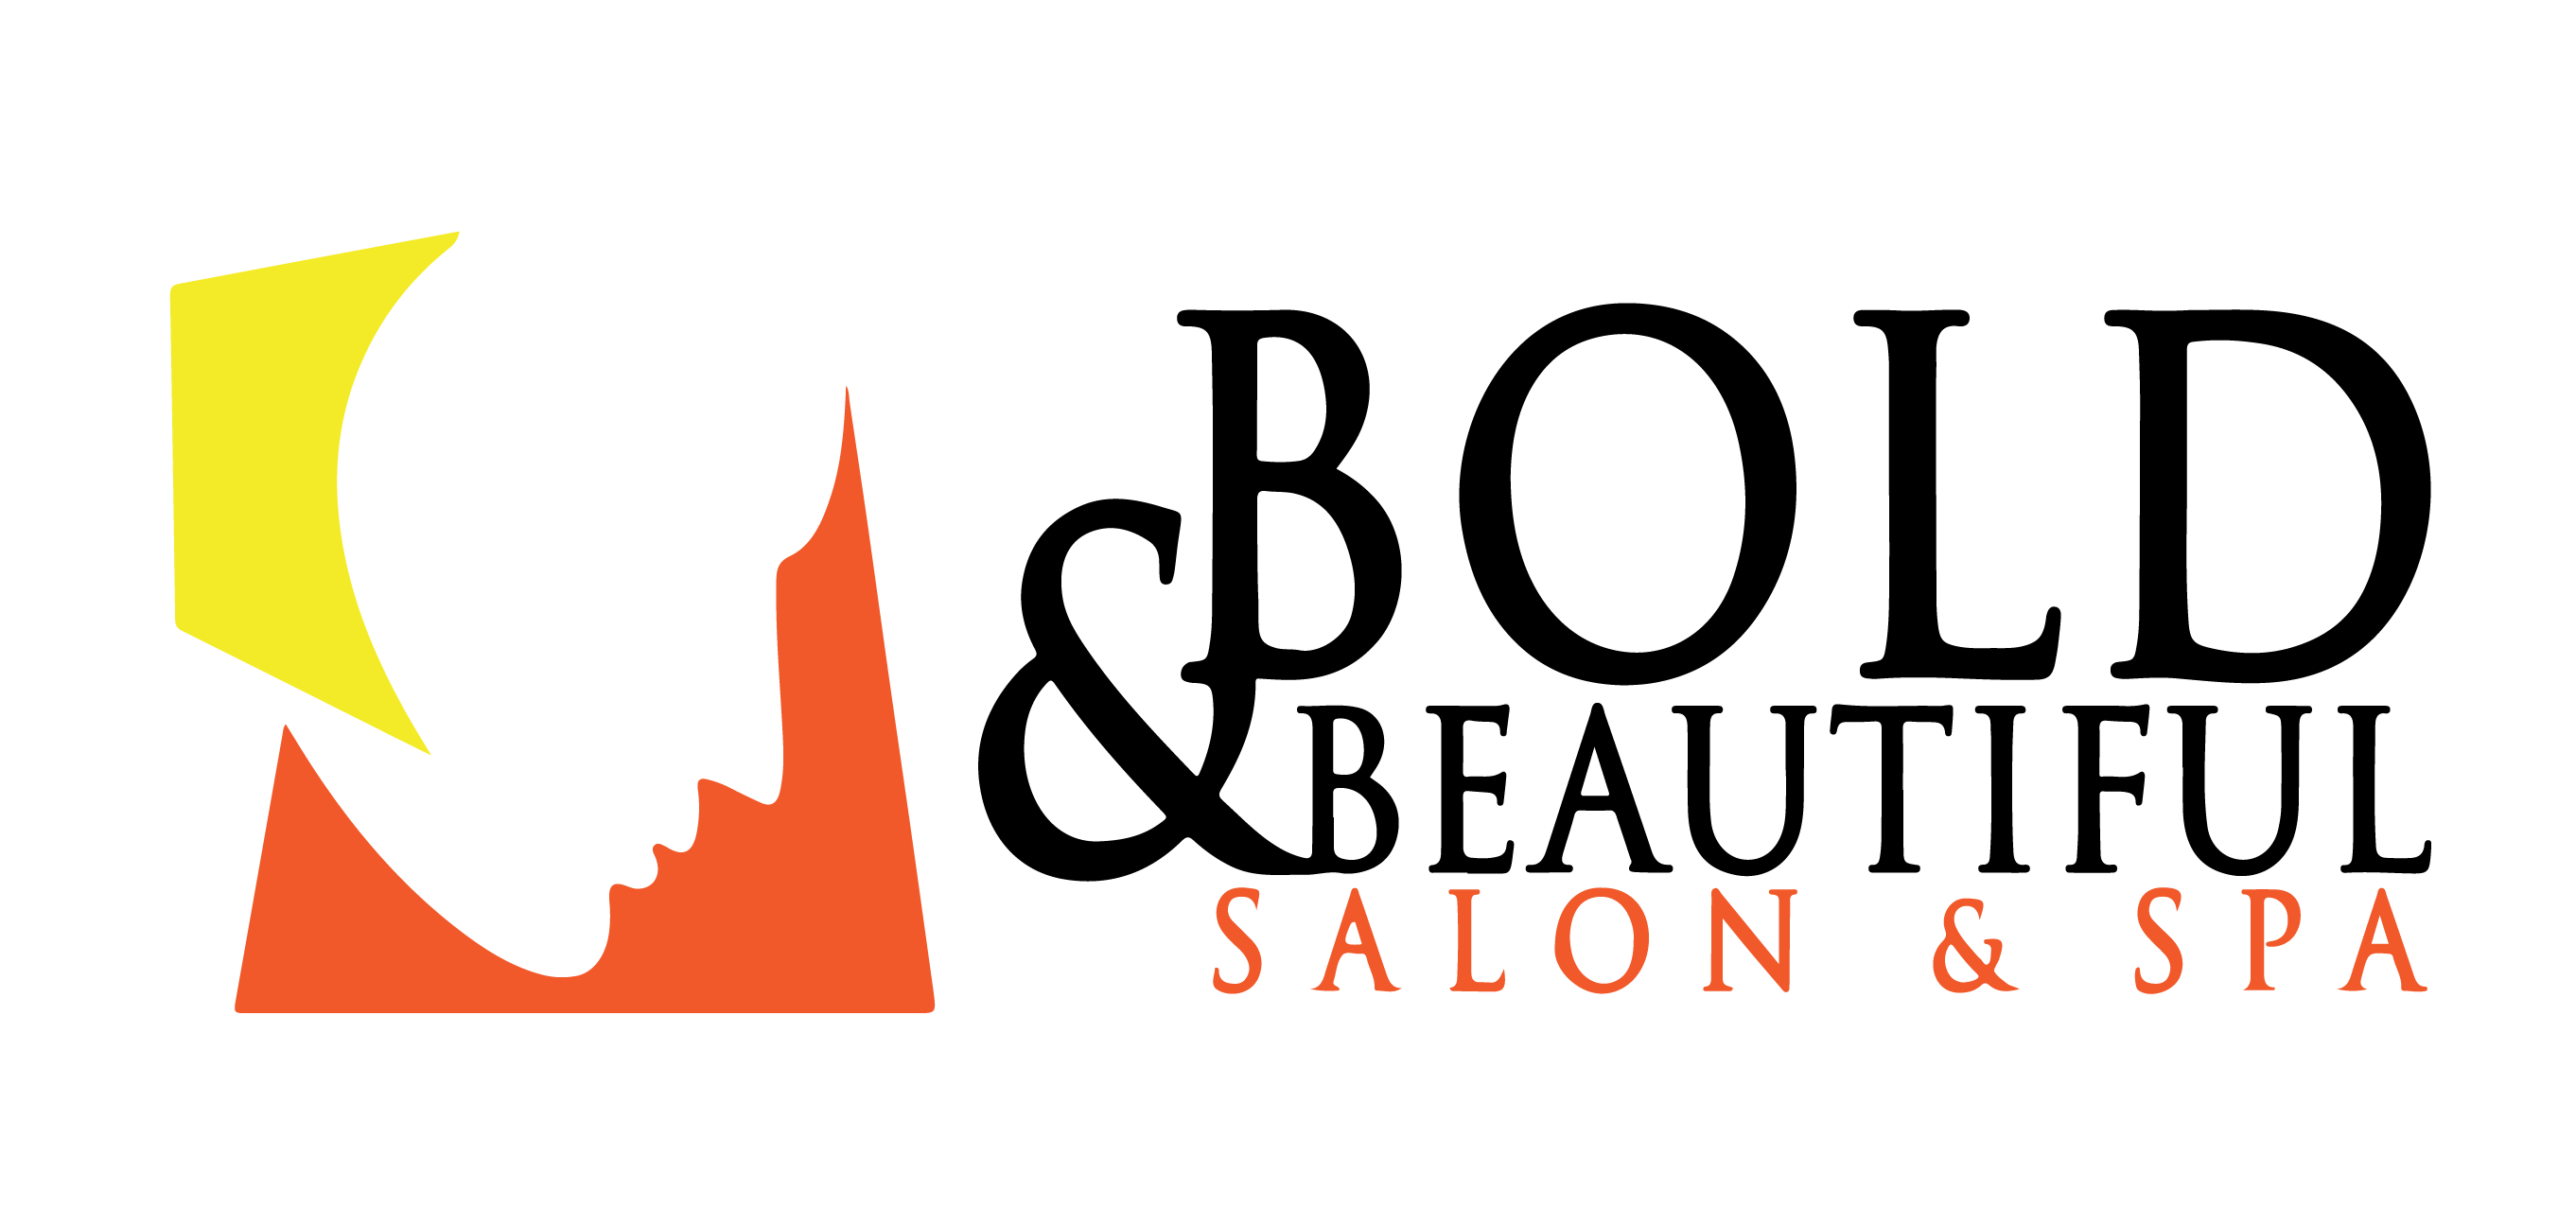 Bold and Beautiful Salon